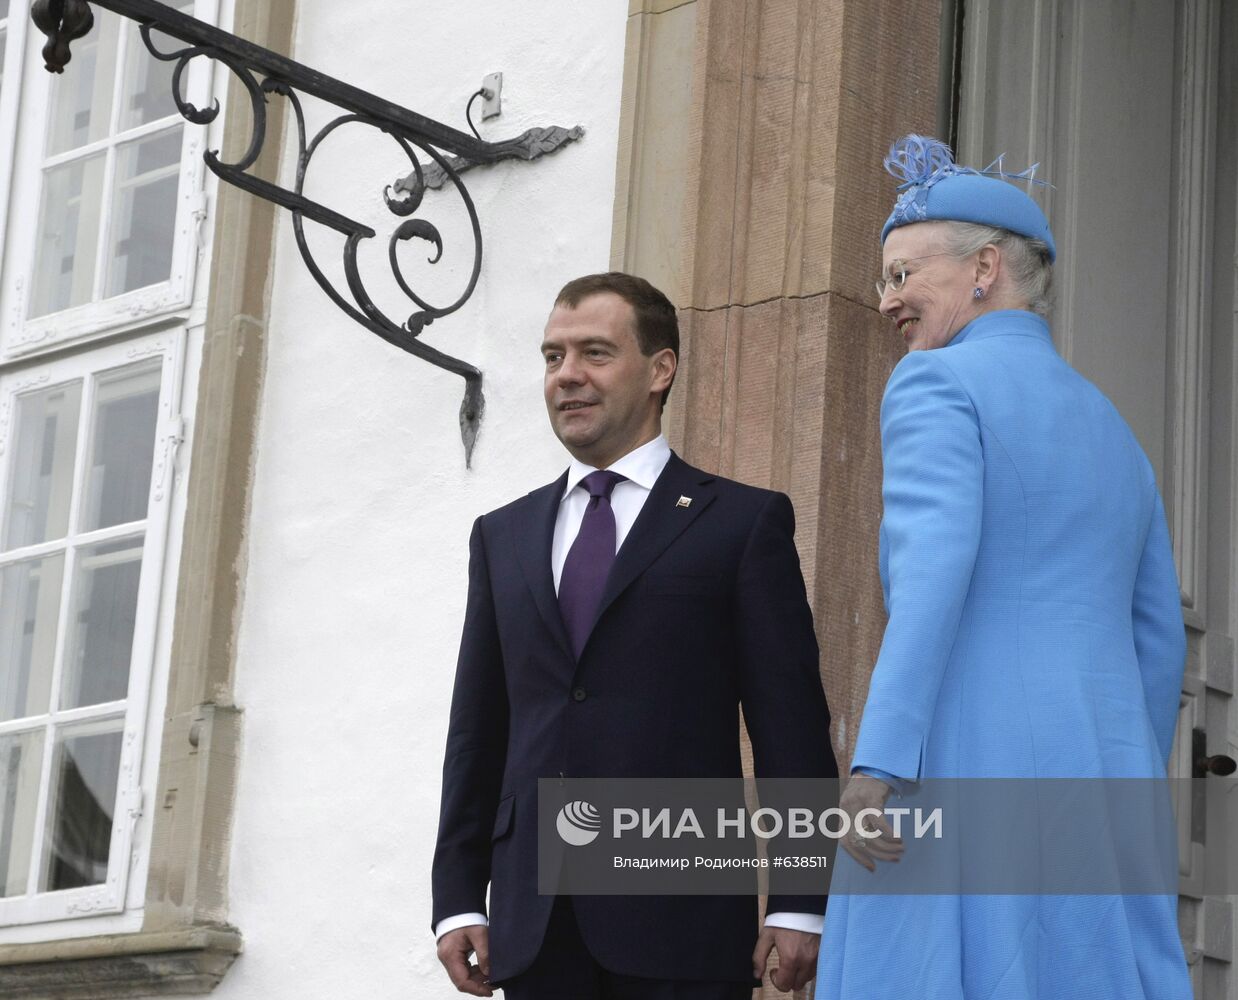 Визит президента РФ Д.Медведева в Данию